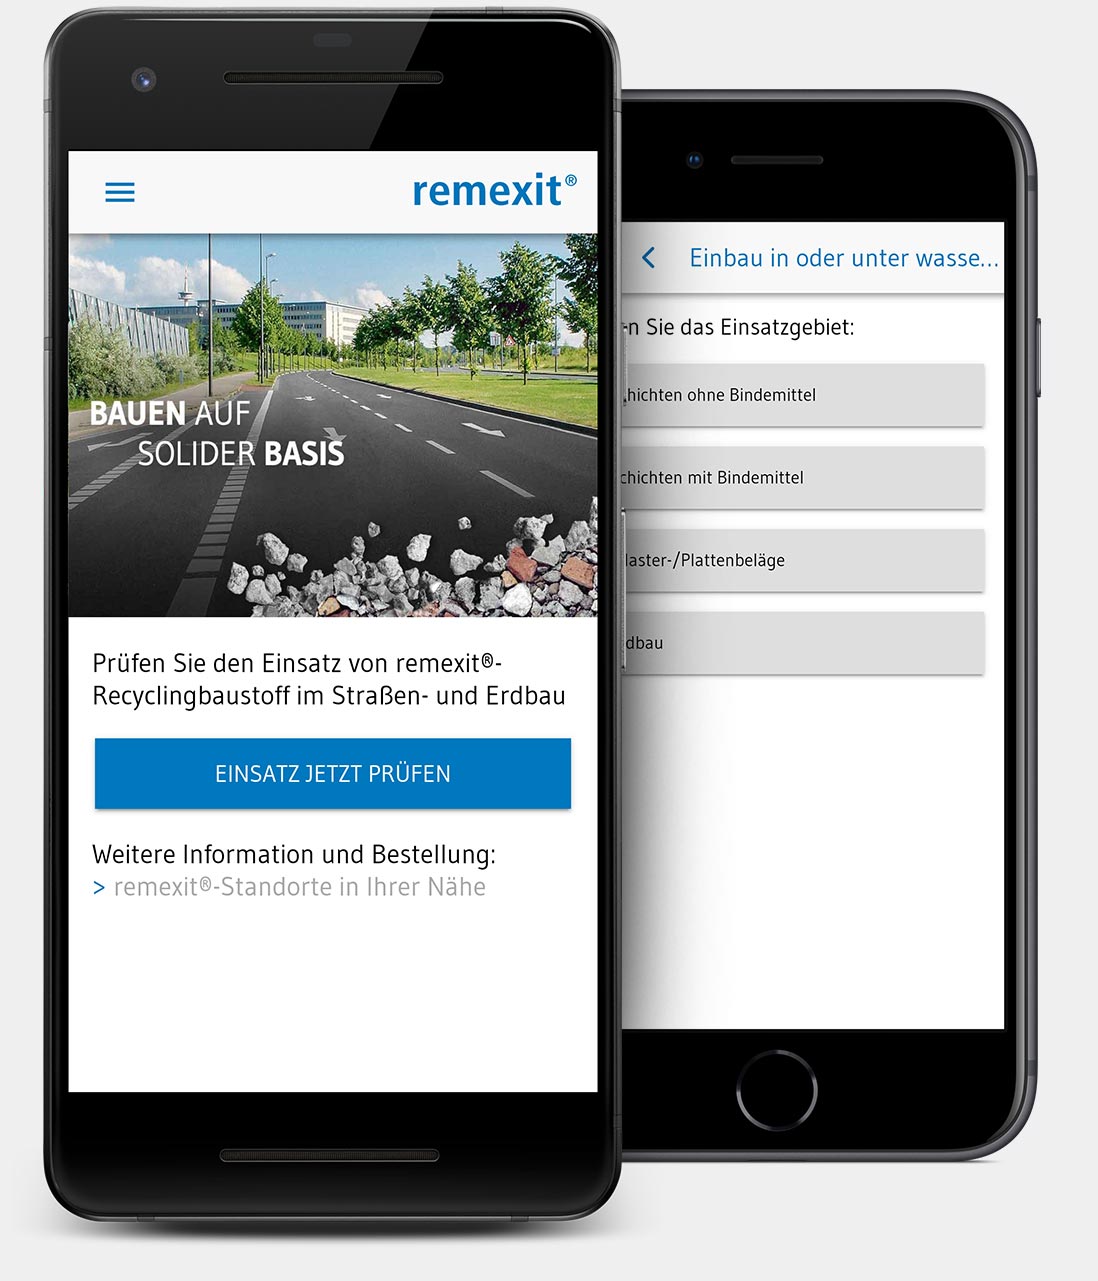 Einsatzmöglichkeiten mobil prüfen mit der App für Recyclingbaustoffe